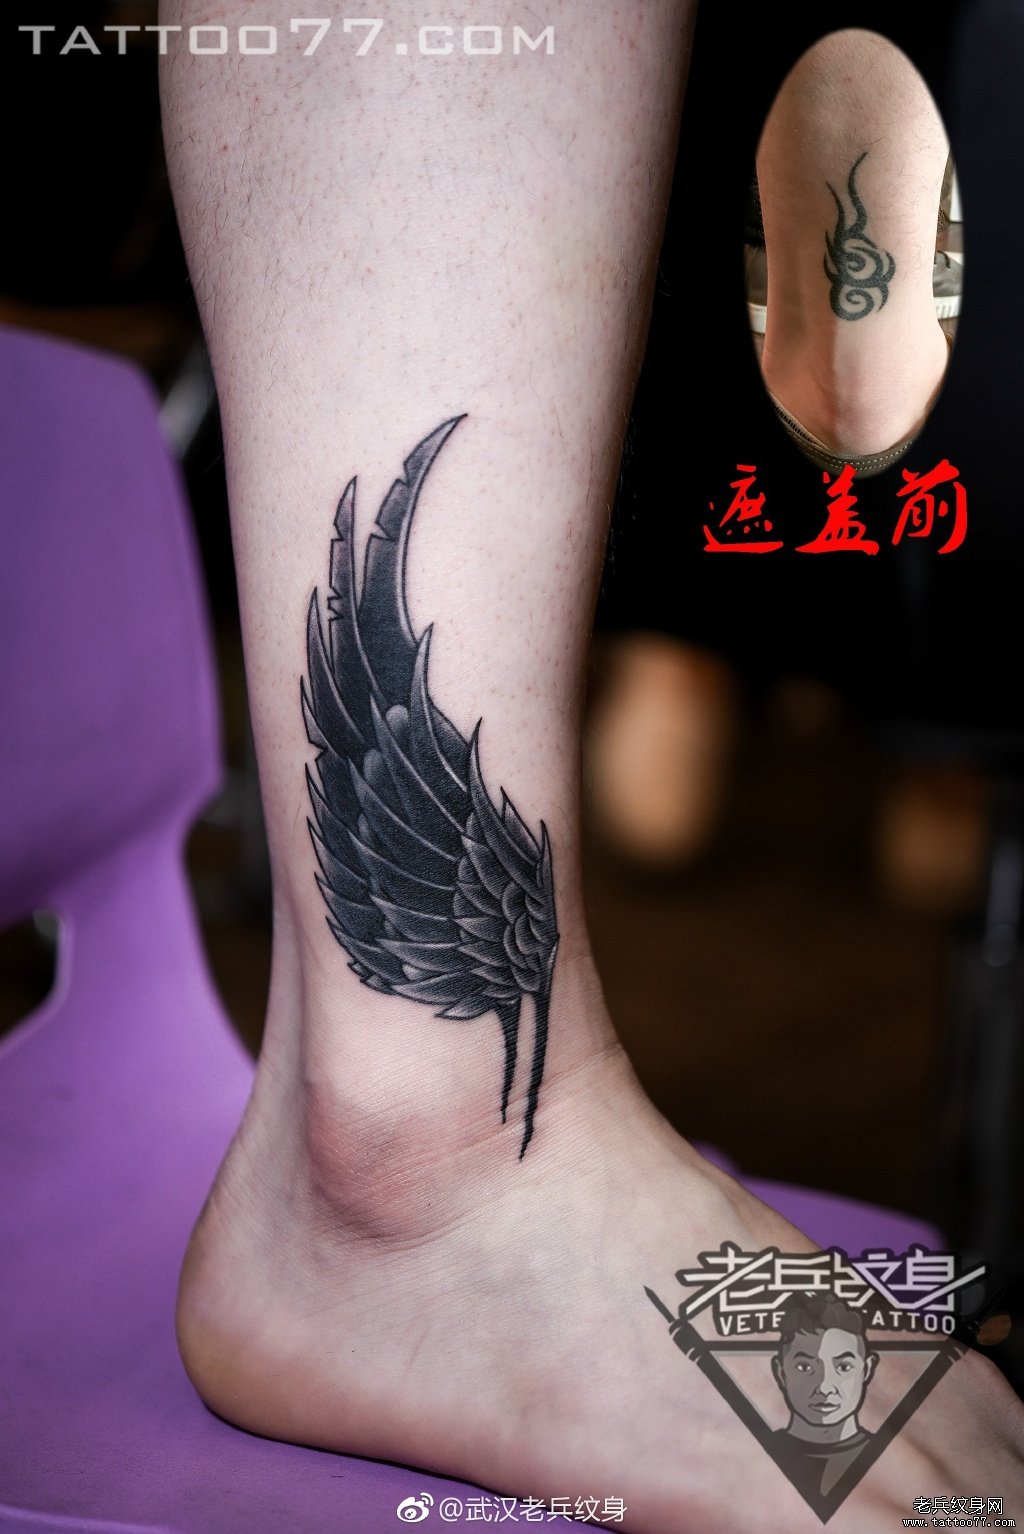 脚踝翅膀纹身图案作品遮盖旧纹身